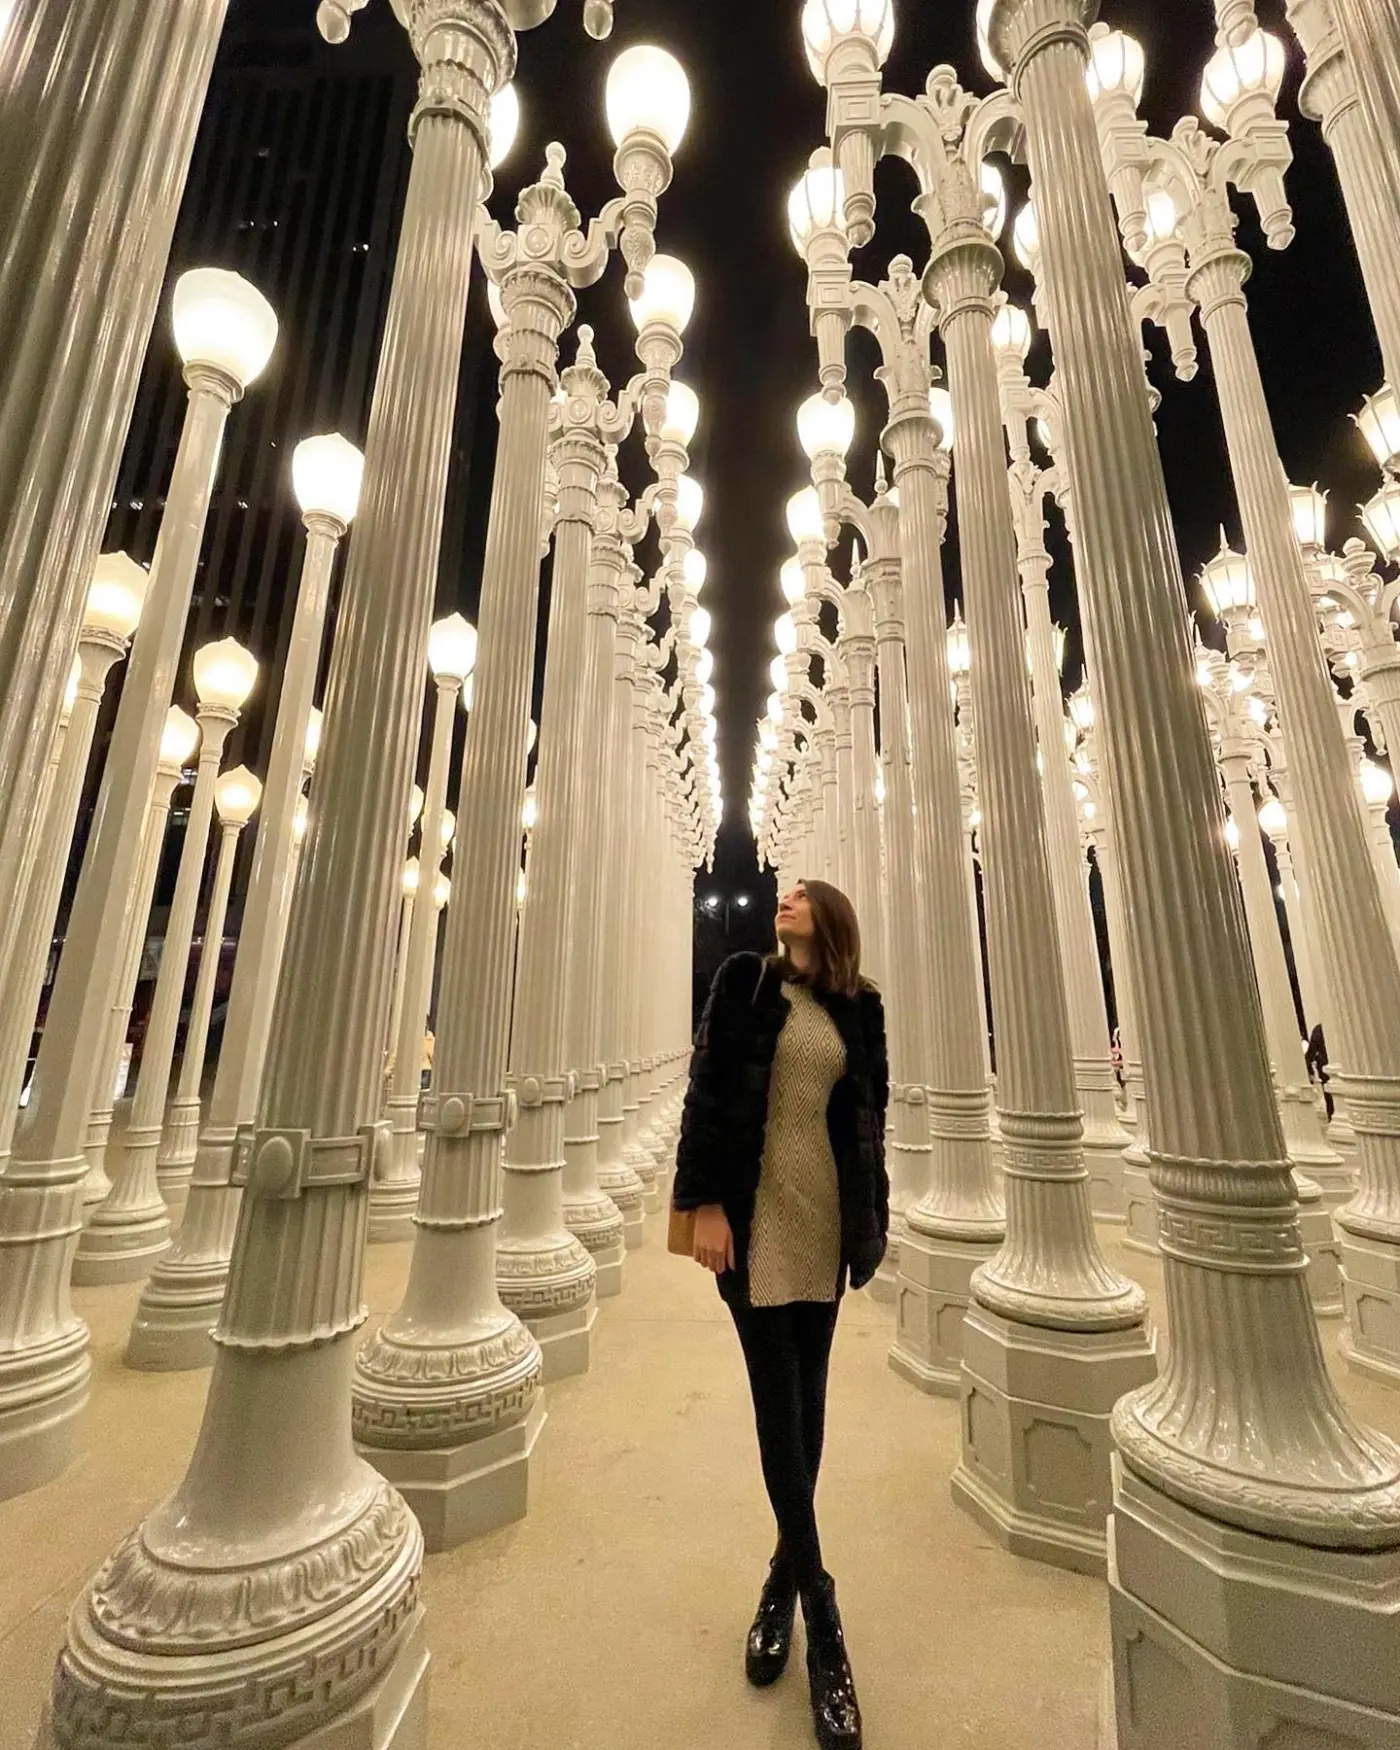 imagem de um salão com centenas de postes de luz brancos, com uma menina posando ao centro